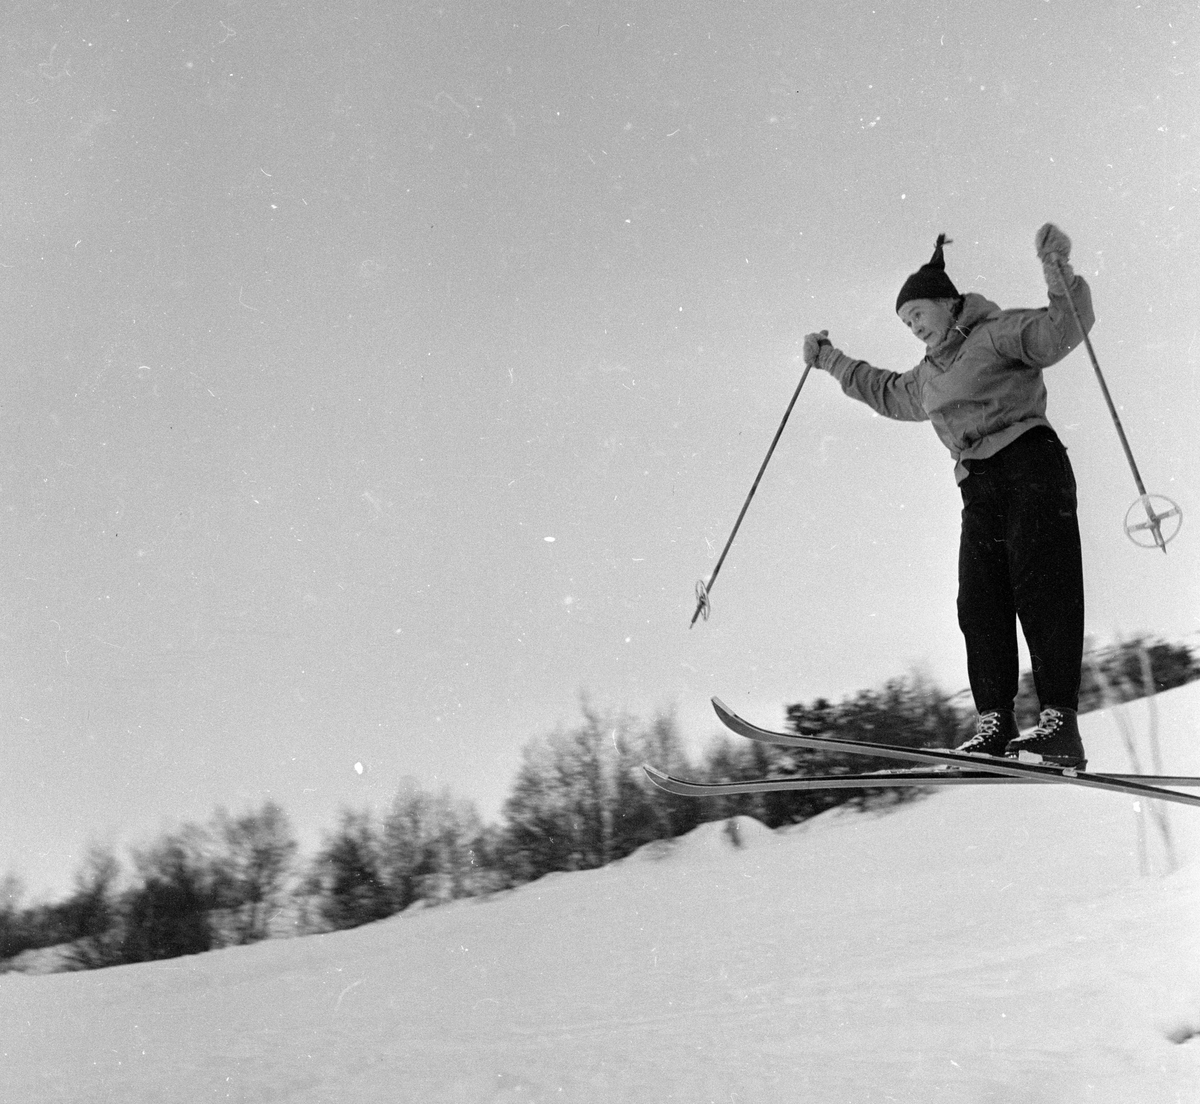 Oppdal, desember 1955, fra opptrening til Vinter-Olympiaden 1956.